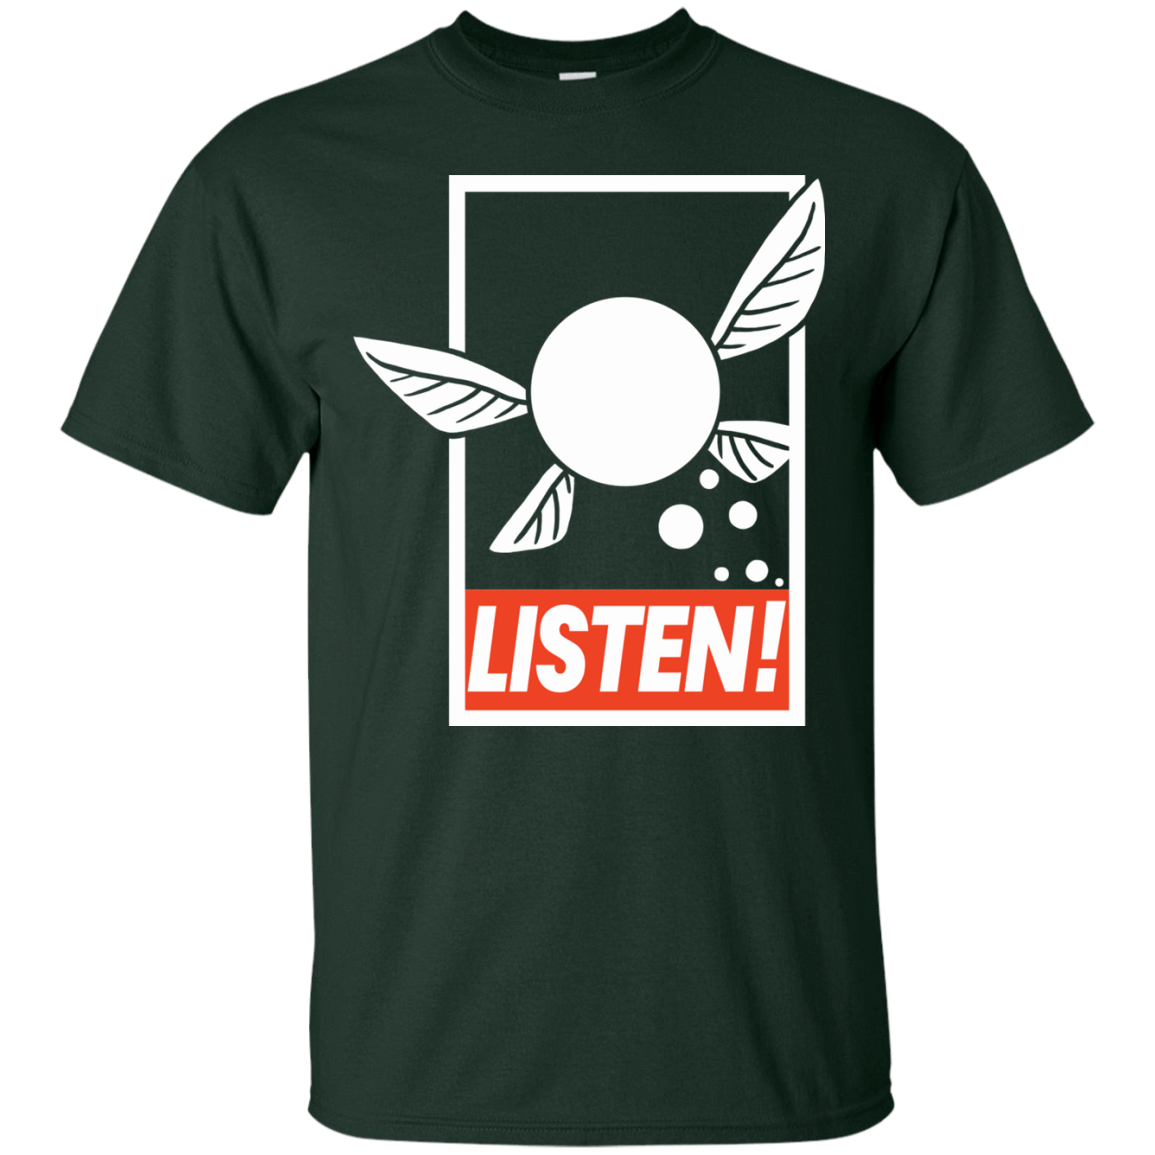 T-Shirts Forest / S LISTEN! T-Shirt